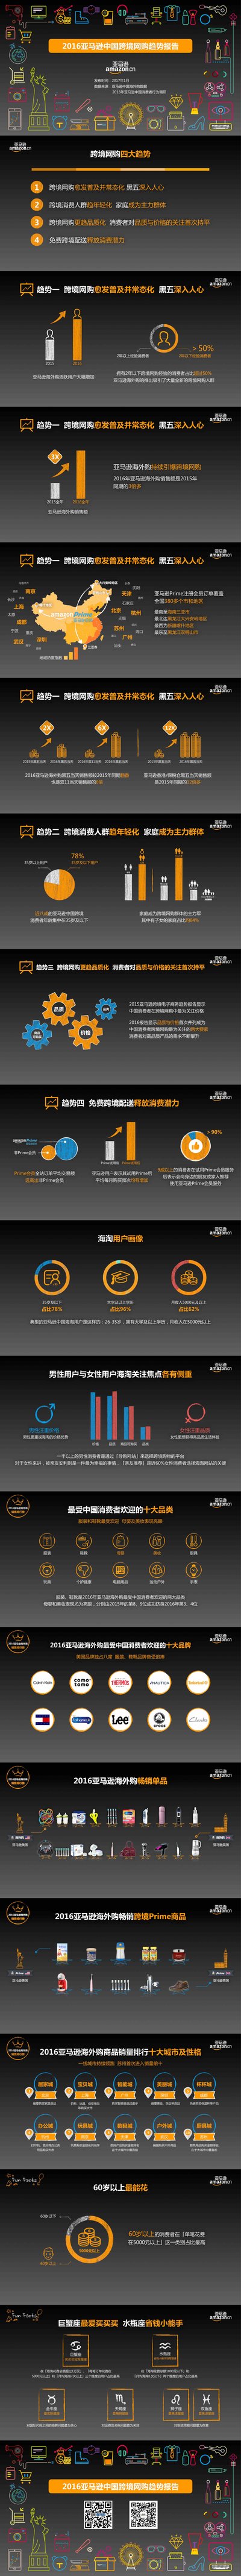 2016亚马逊中国跨境网购趋势报告